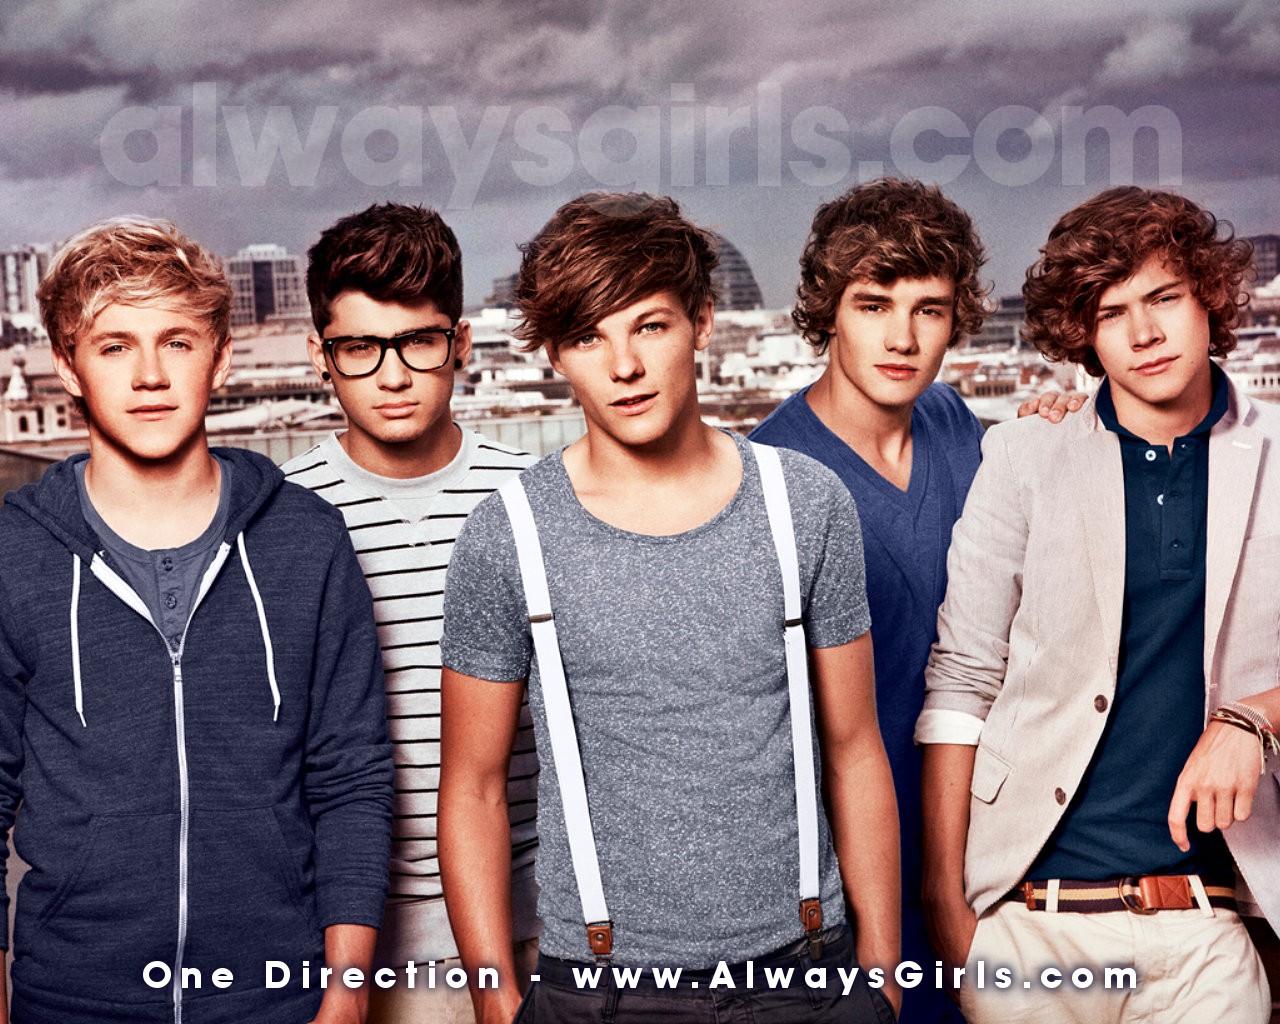 One Direction - One-Direction-one-direction-31678672-1280-1024.jpg